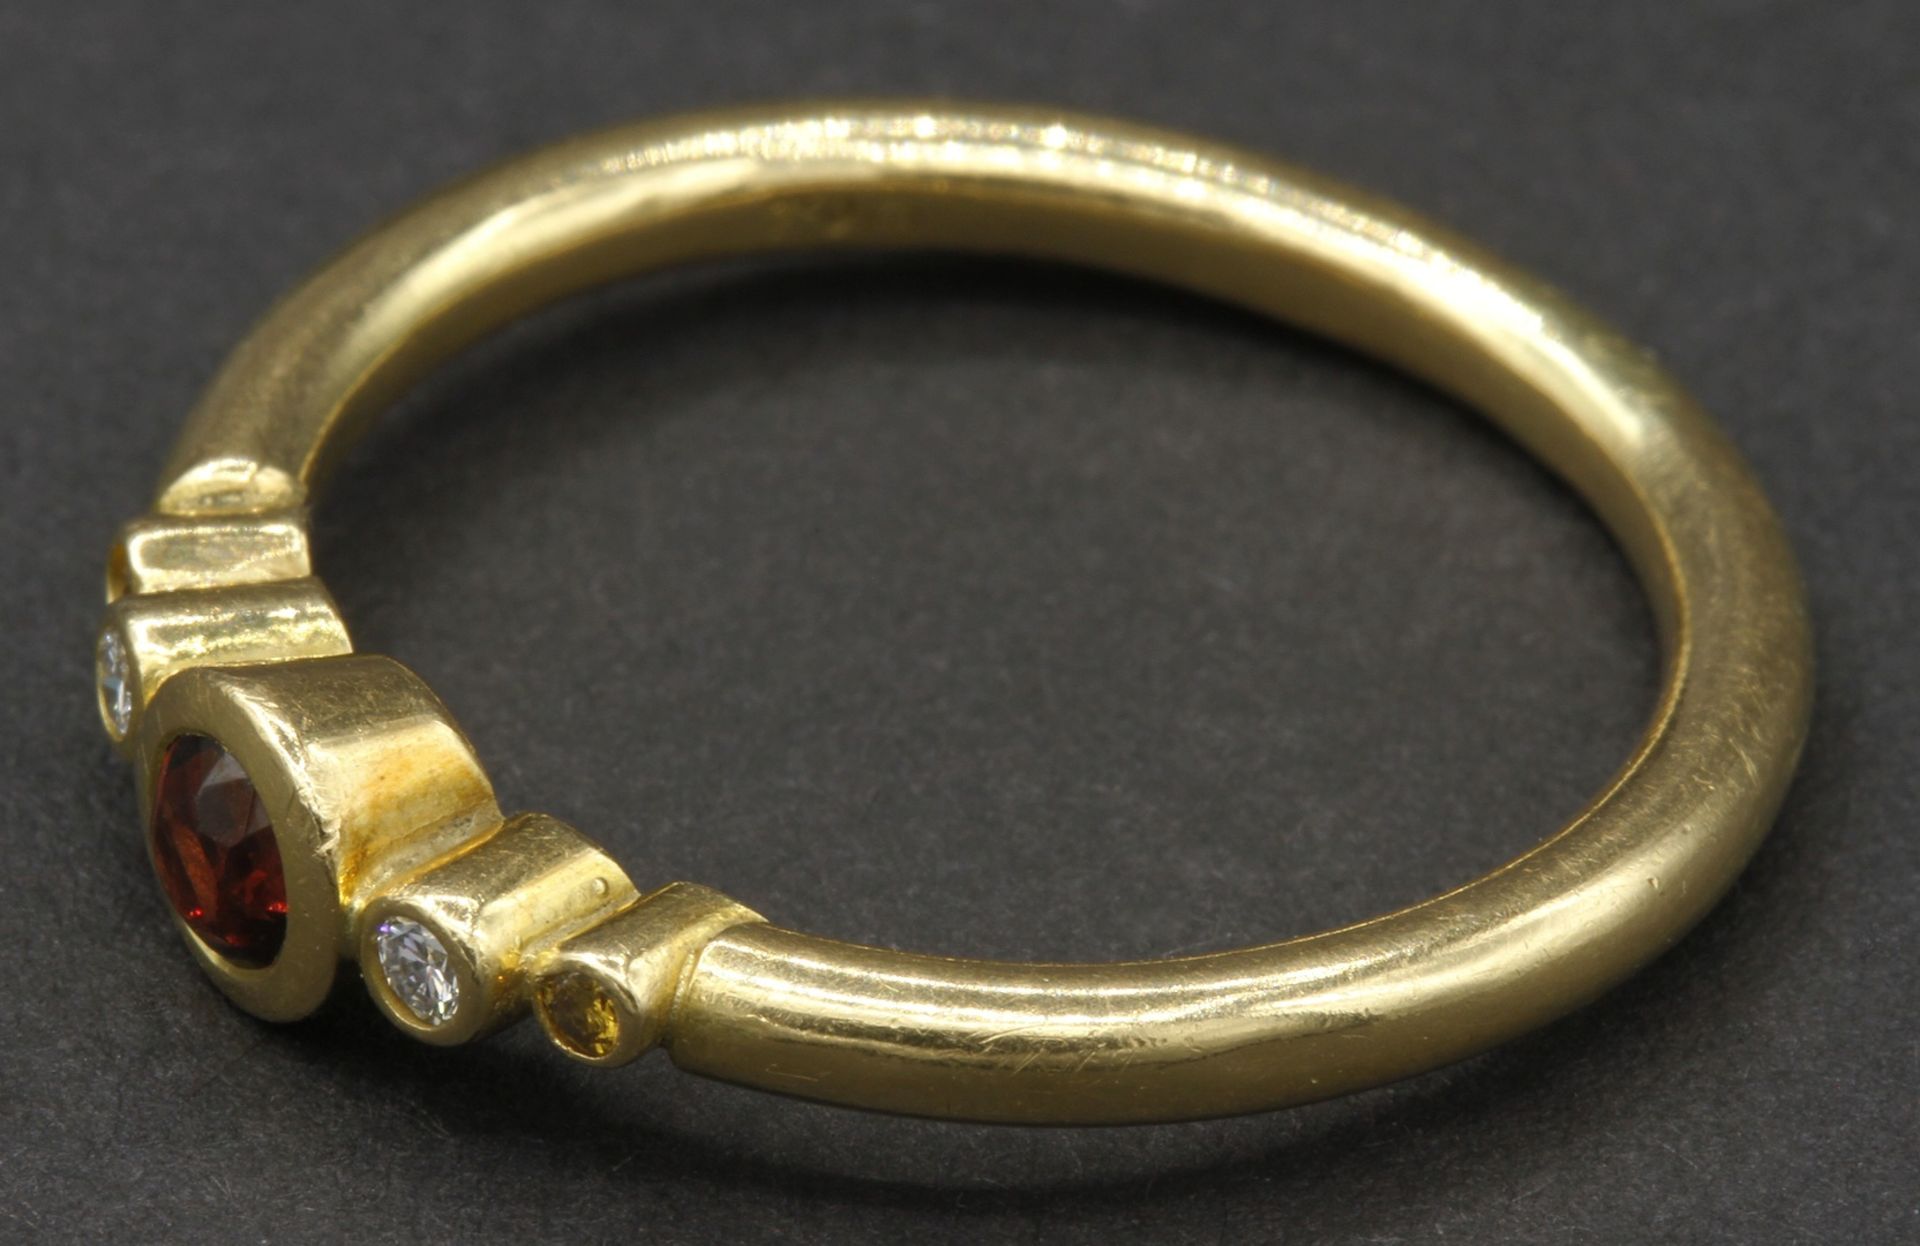 Gelbgold-Ring mit Granat und Diamanten750/- Gelbgold, Granat, zwei 0,03 ct Diamanten (TW/SI), zwei - Image 2 of 2